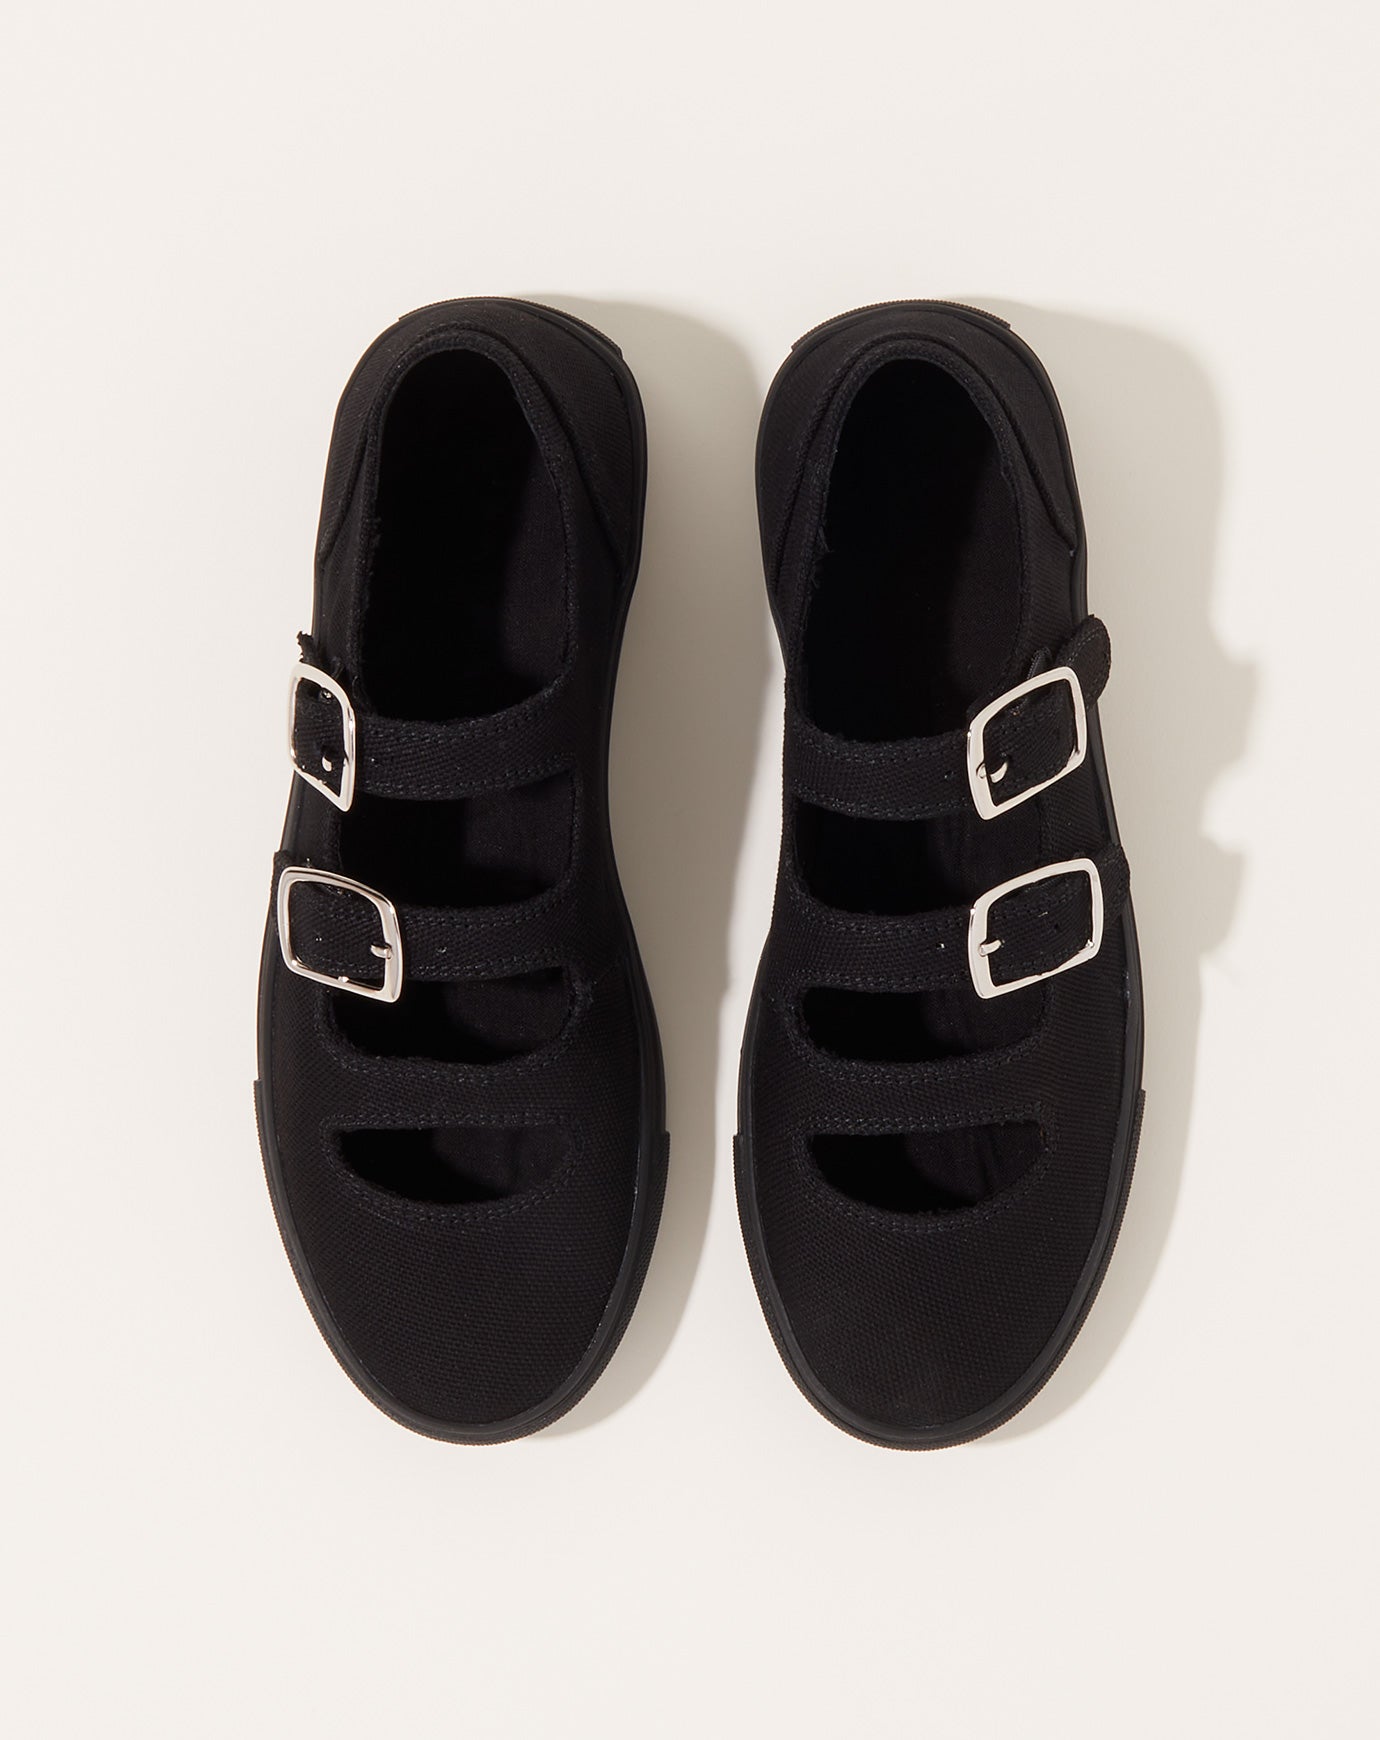 Caron Callahan Simona Sneakers in Black Canvas